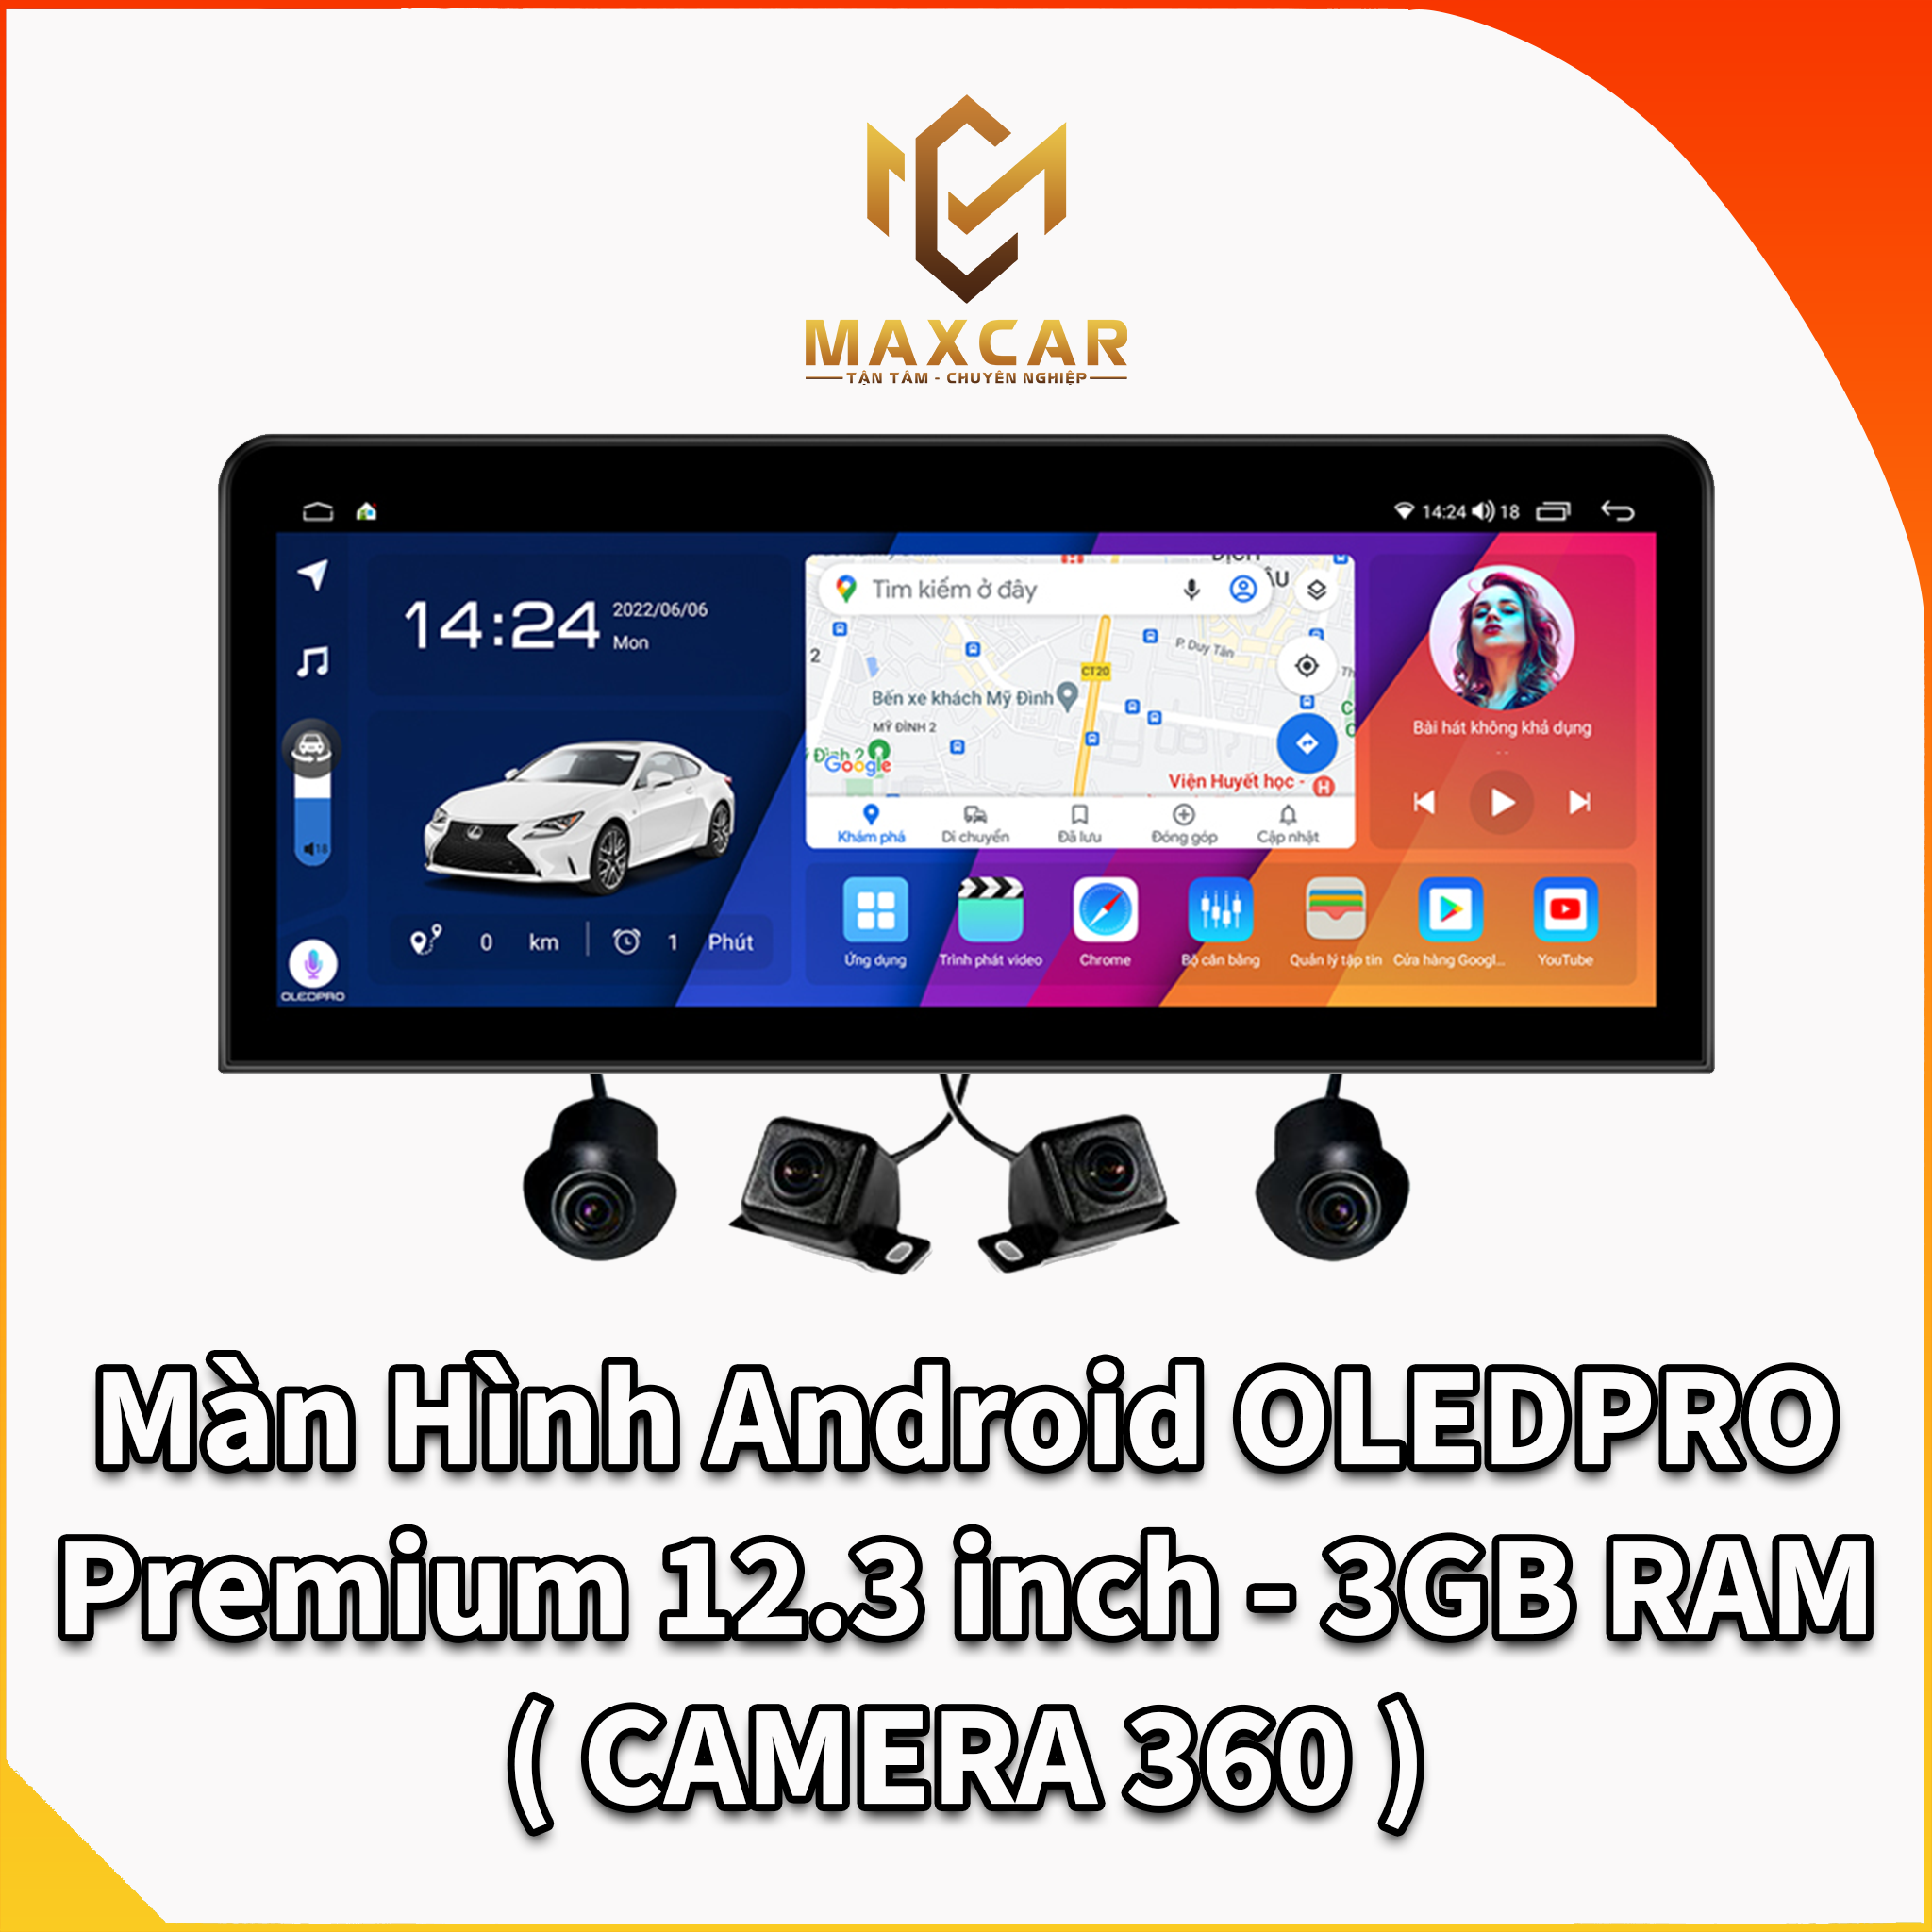 Màn Hình Android Premium 12.3 inch - 3GB RAM tích hợp camera 360